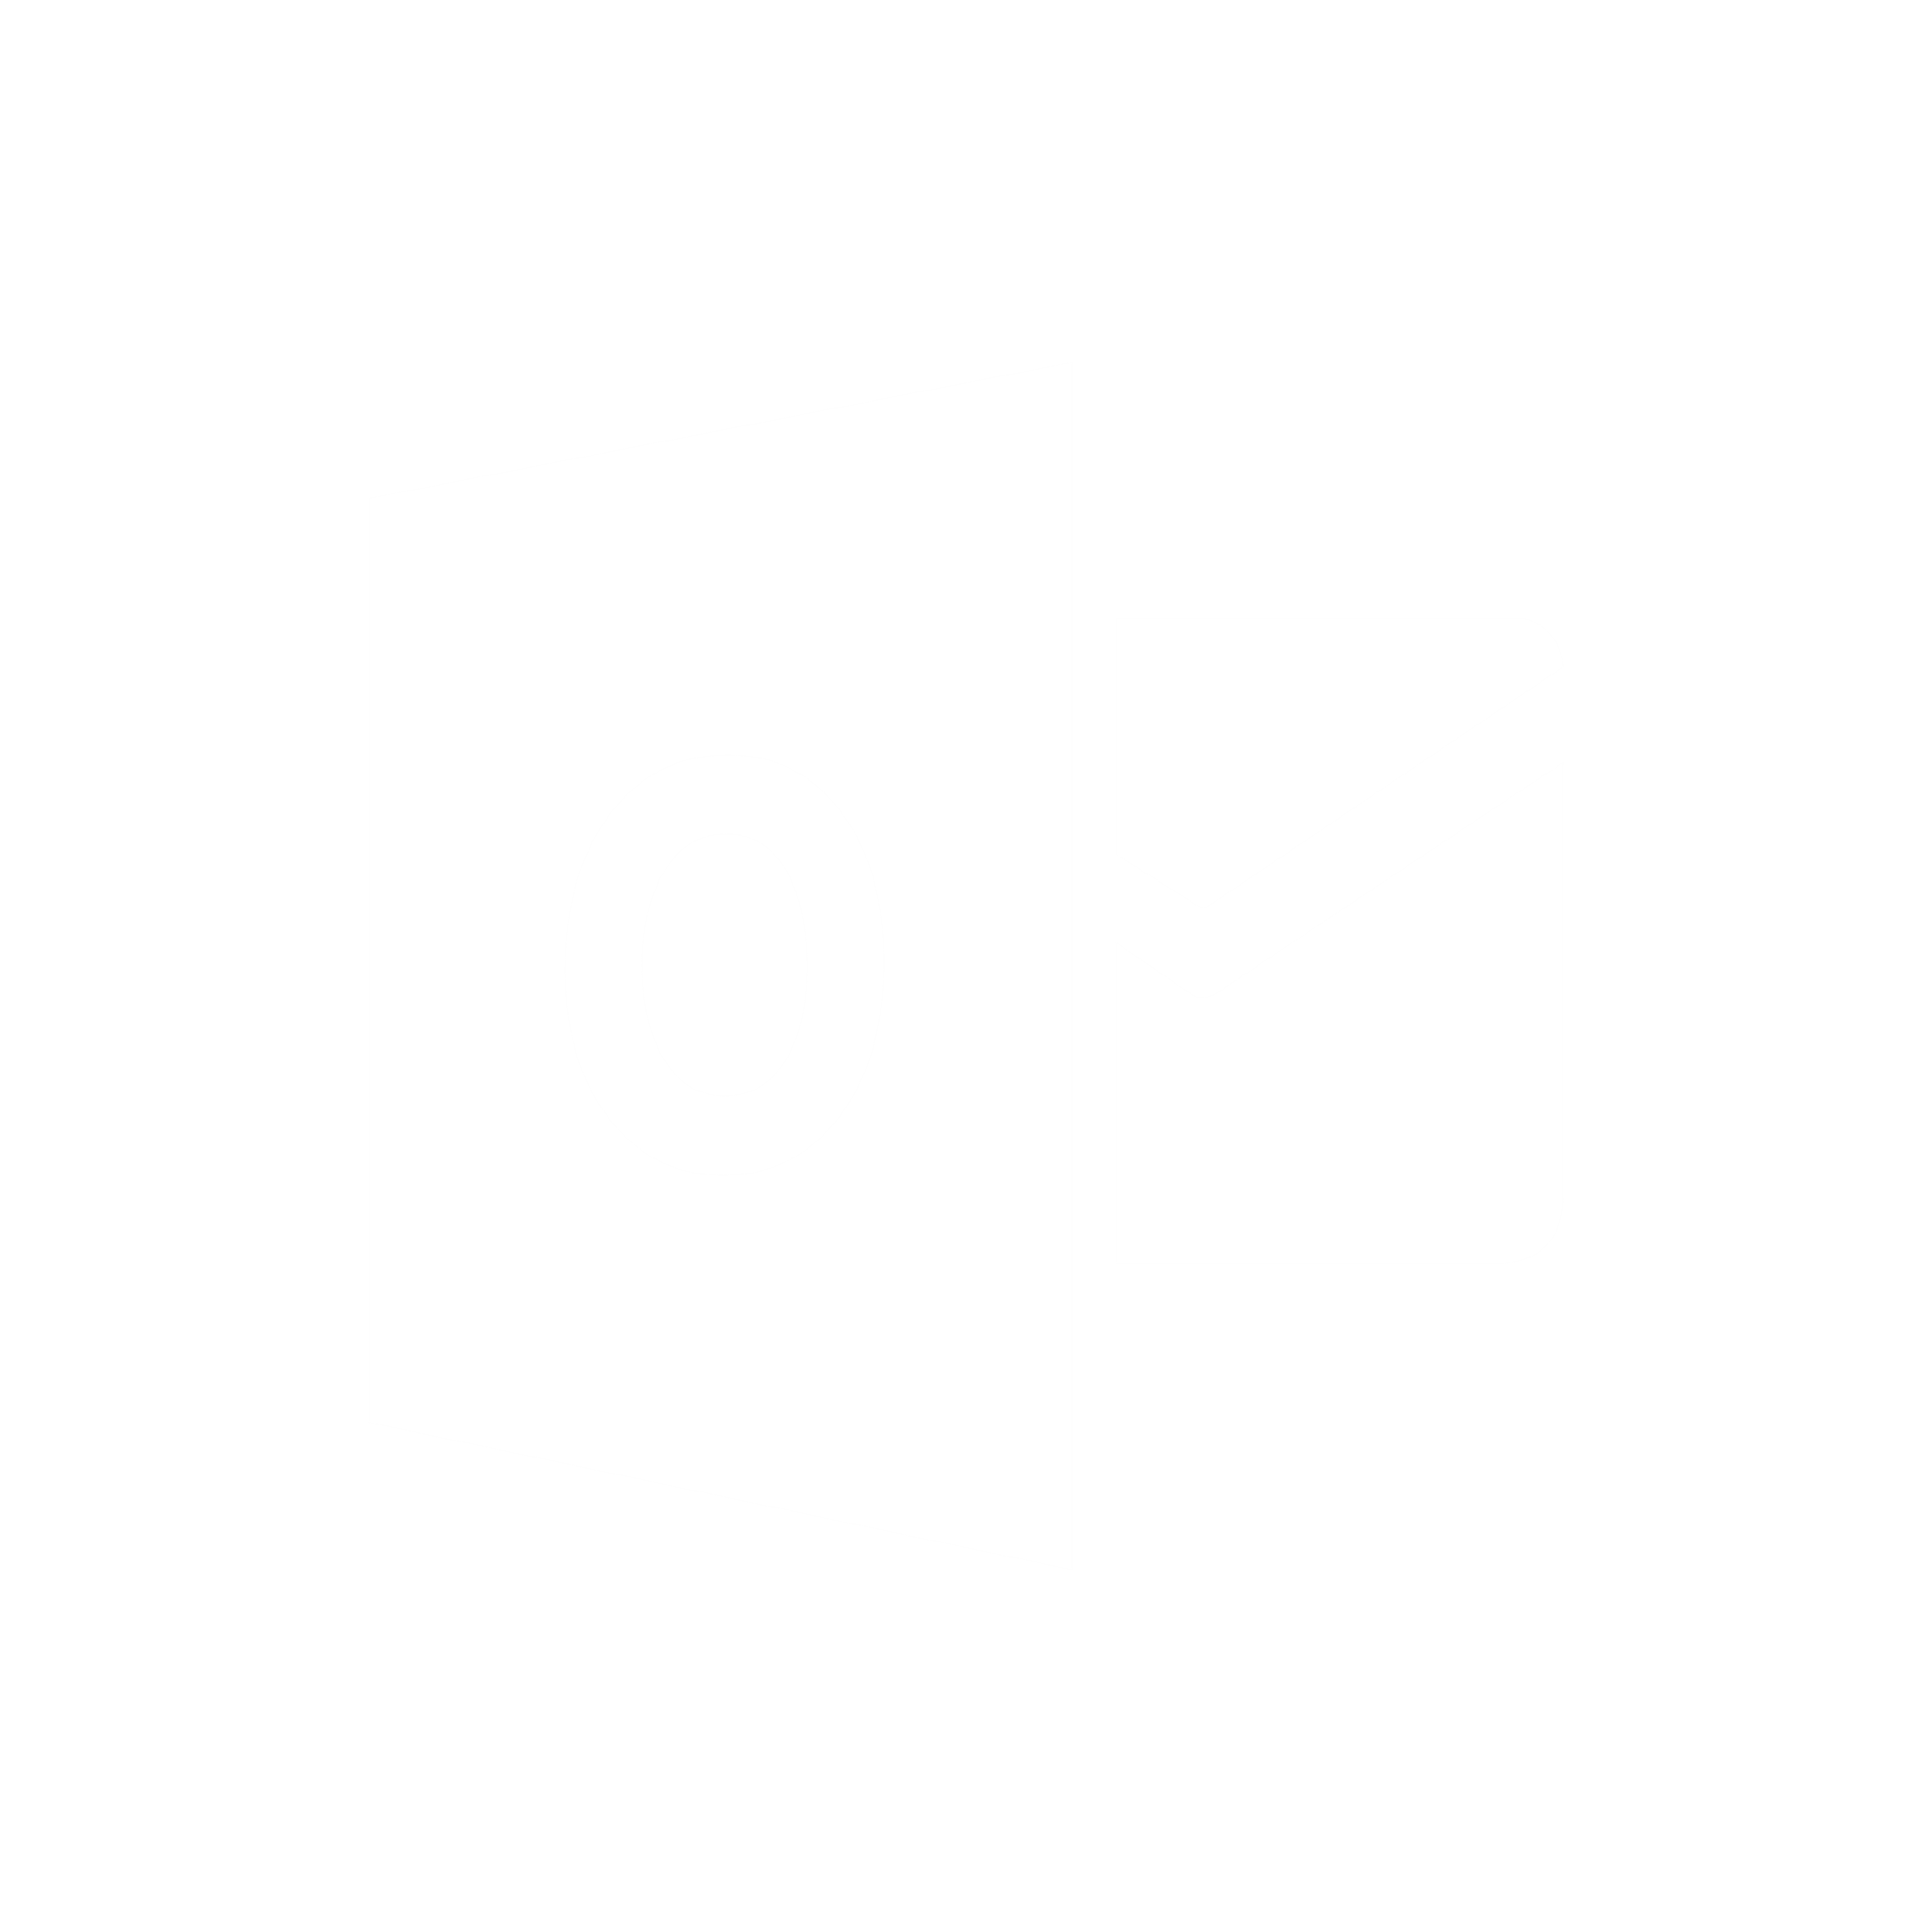 Muốn có một hộp thư Outlook thật sự thú vị? Hãy thử tìm kiếm biểu tượng Outlook đen để tạo điểm nhấn thẩm mỹ cho email. Tuy nhỏ bé, tính hợp thẩm mỹ của chúng sẽ tạo ra một trải nghiệm đọc email khác biệt.